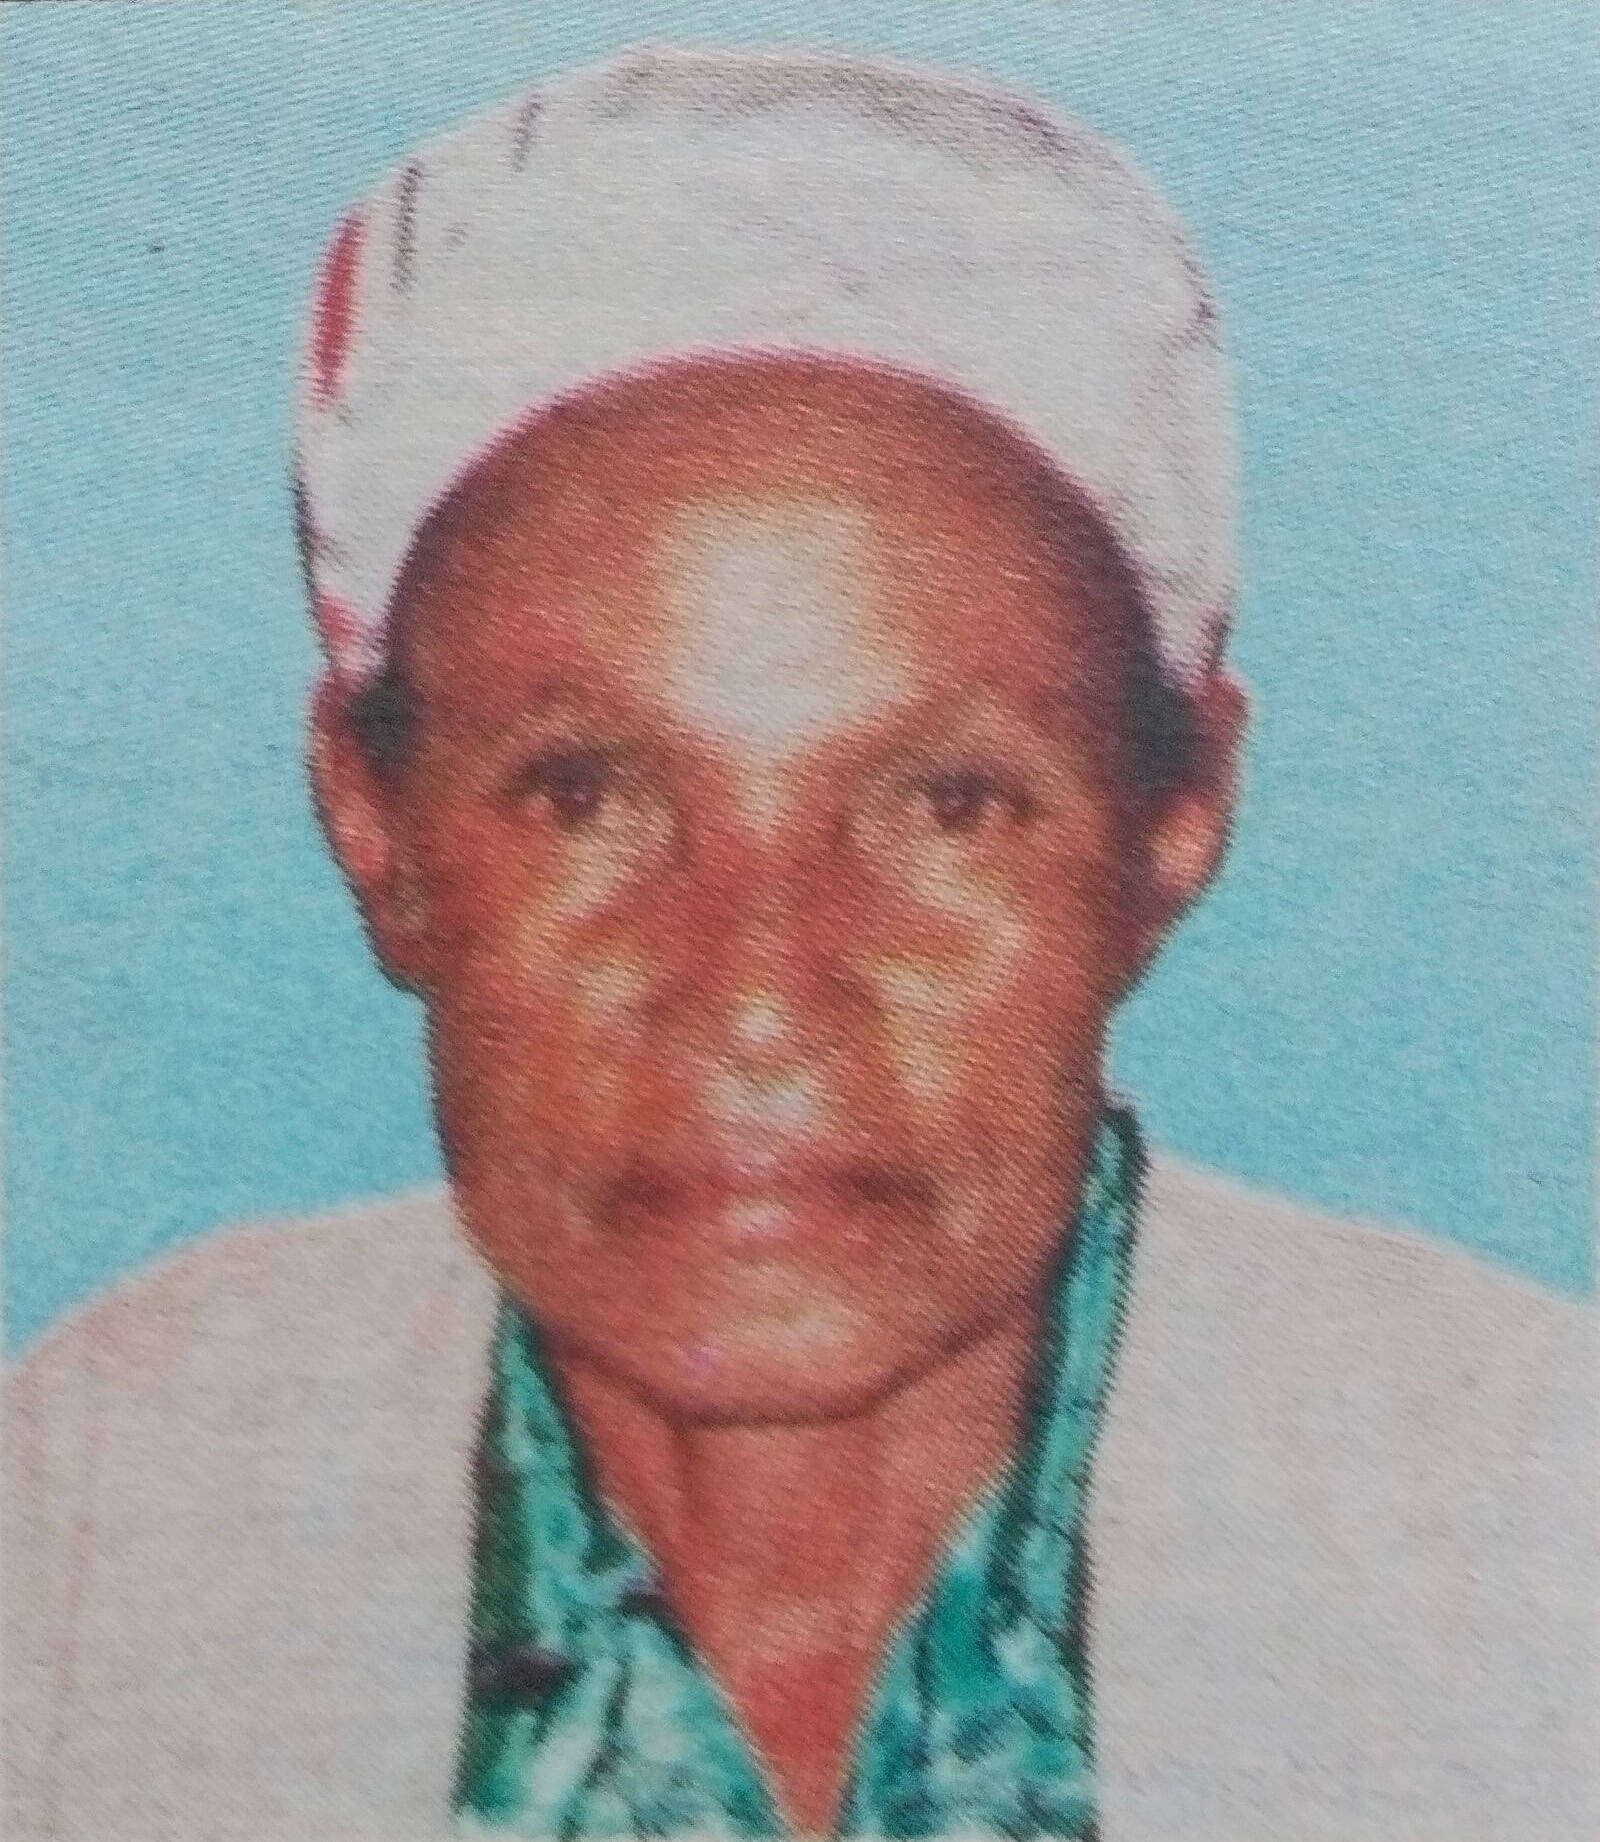 Obituary Image of Lucia Nyamokune Ondieki Sunrise:1930-Sunset:12/03/2017